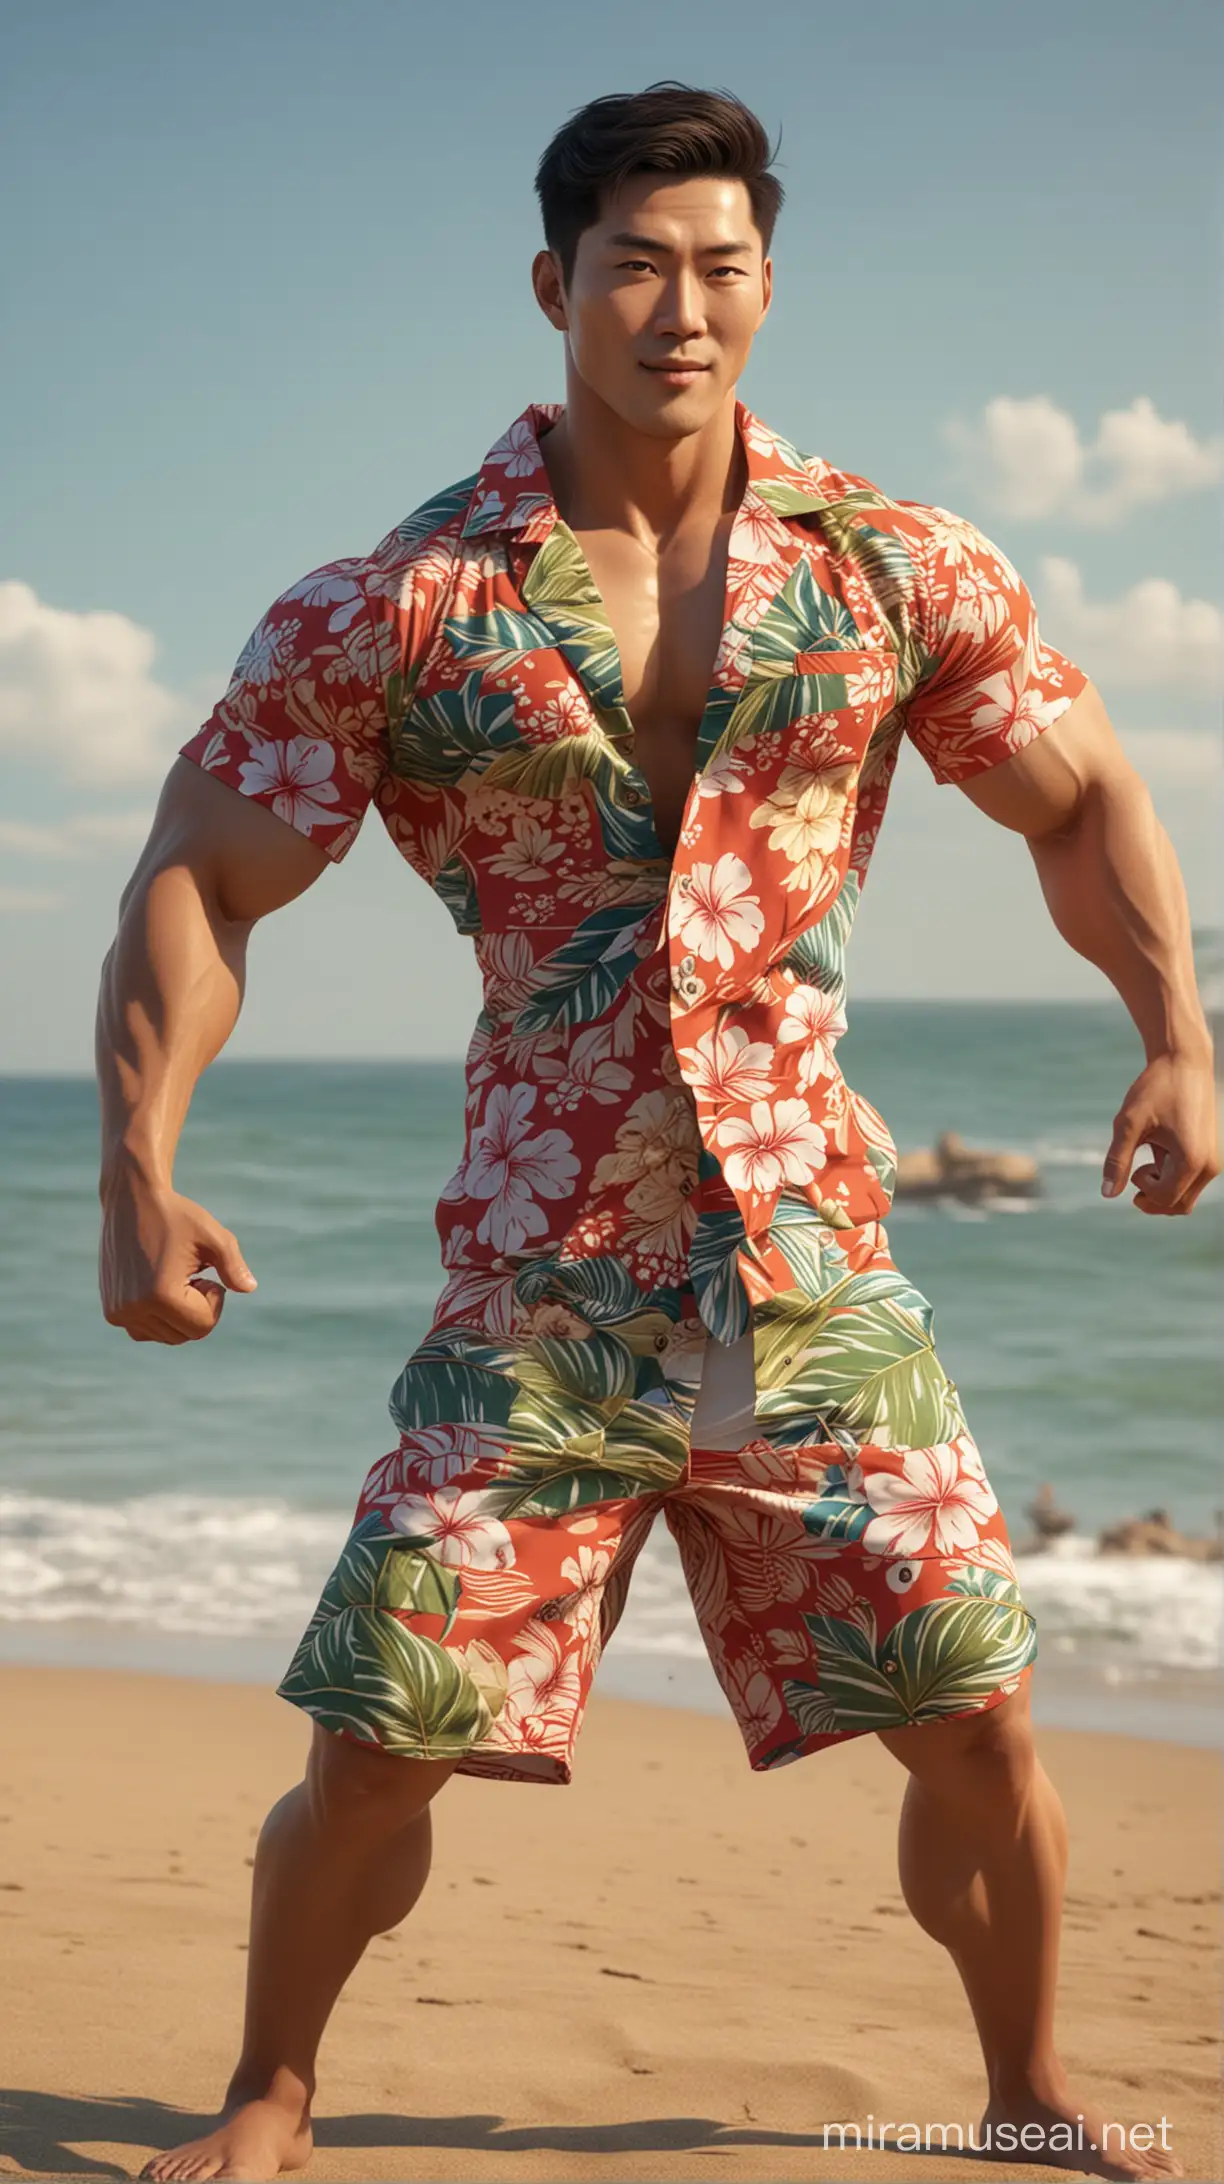 Muscular Korean Man in Open Hawaiian Shirt Flexing on Beach